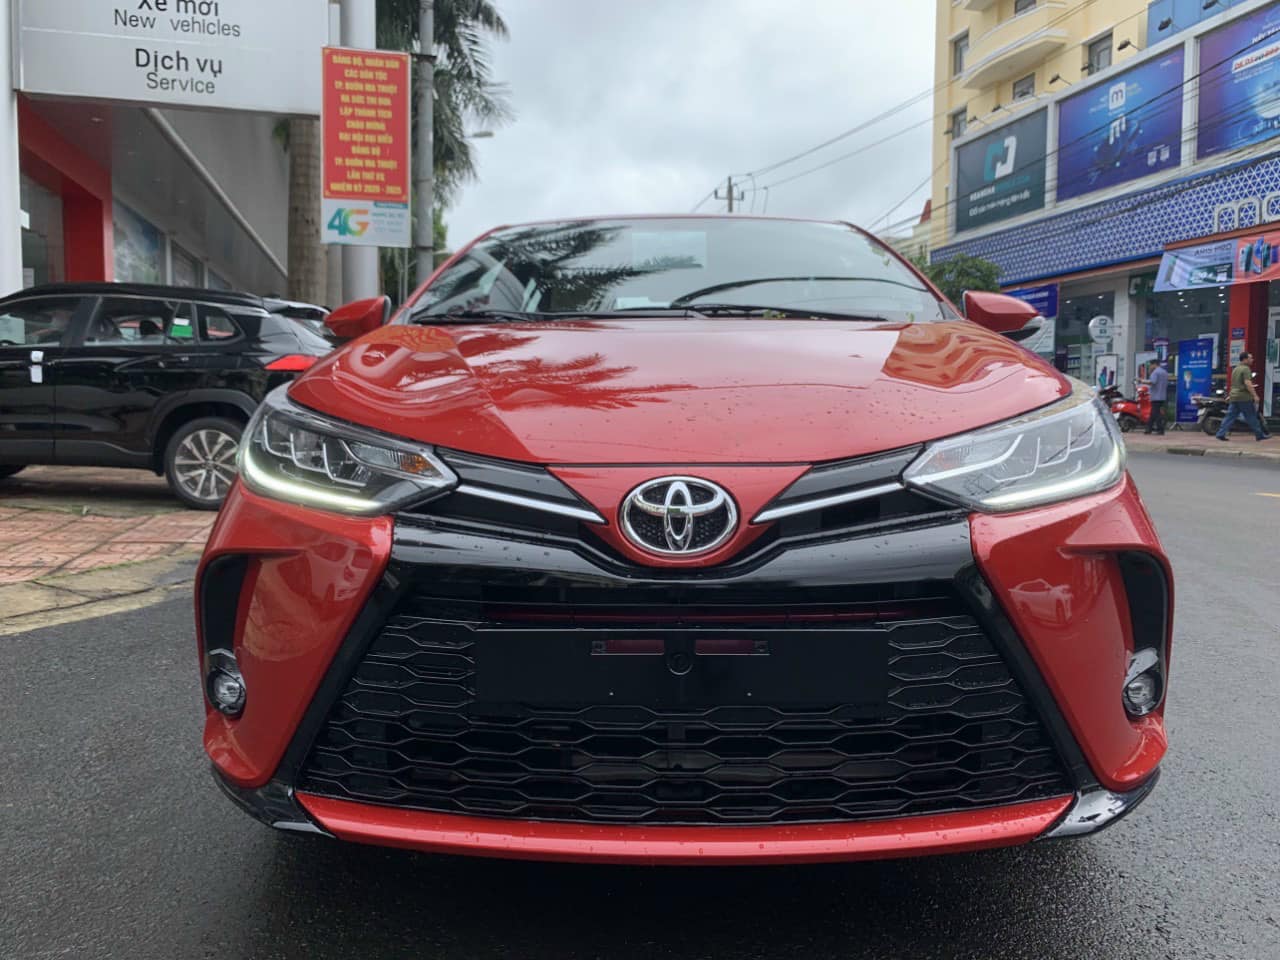 Ảnh thực tế Toyota Yaris 2021 tại Việt Nam, đại lý bắt đầu nhận đặt cọc - Ảnh 1.